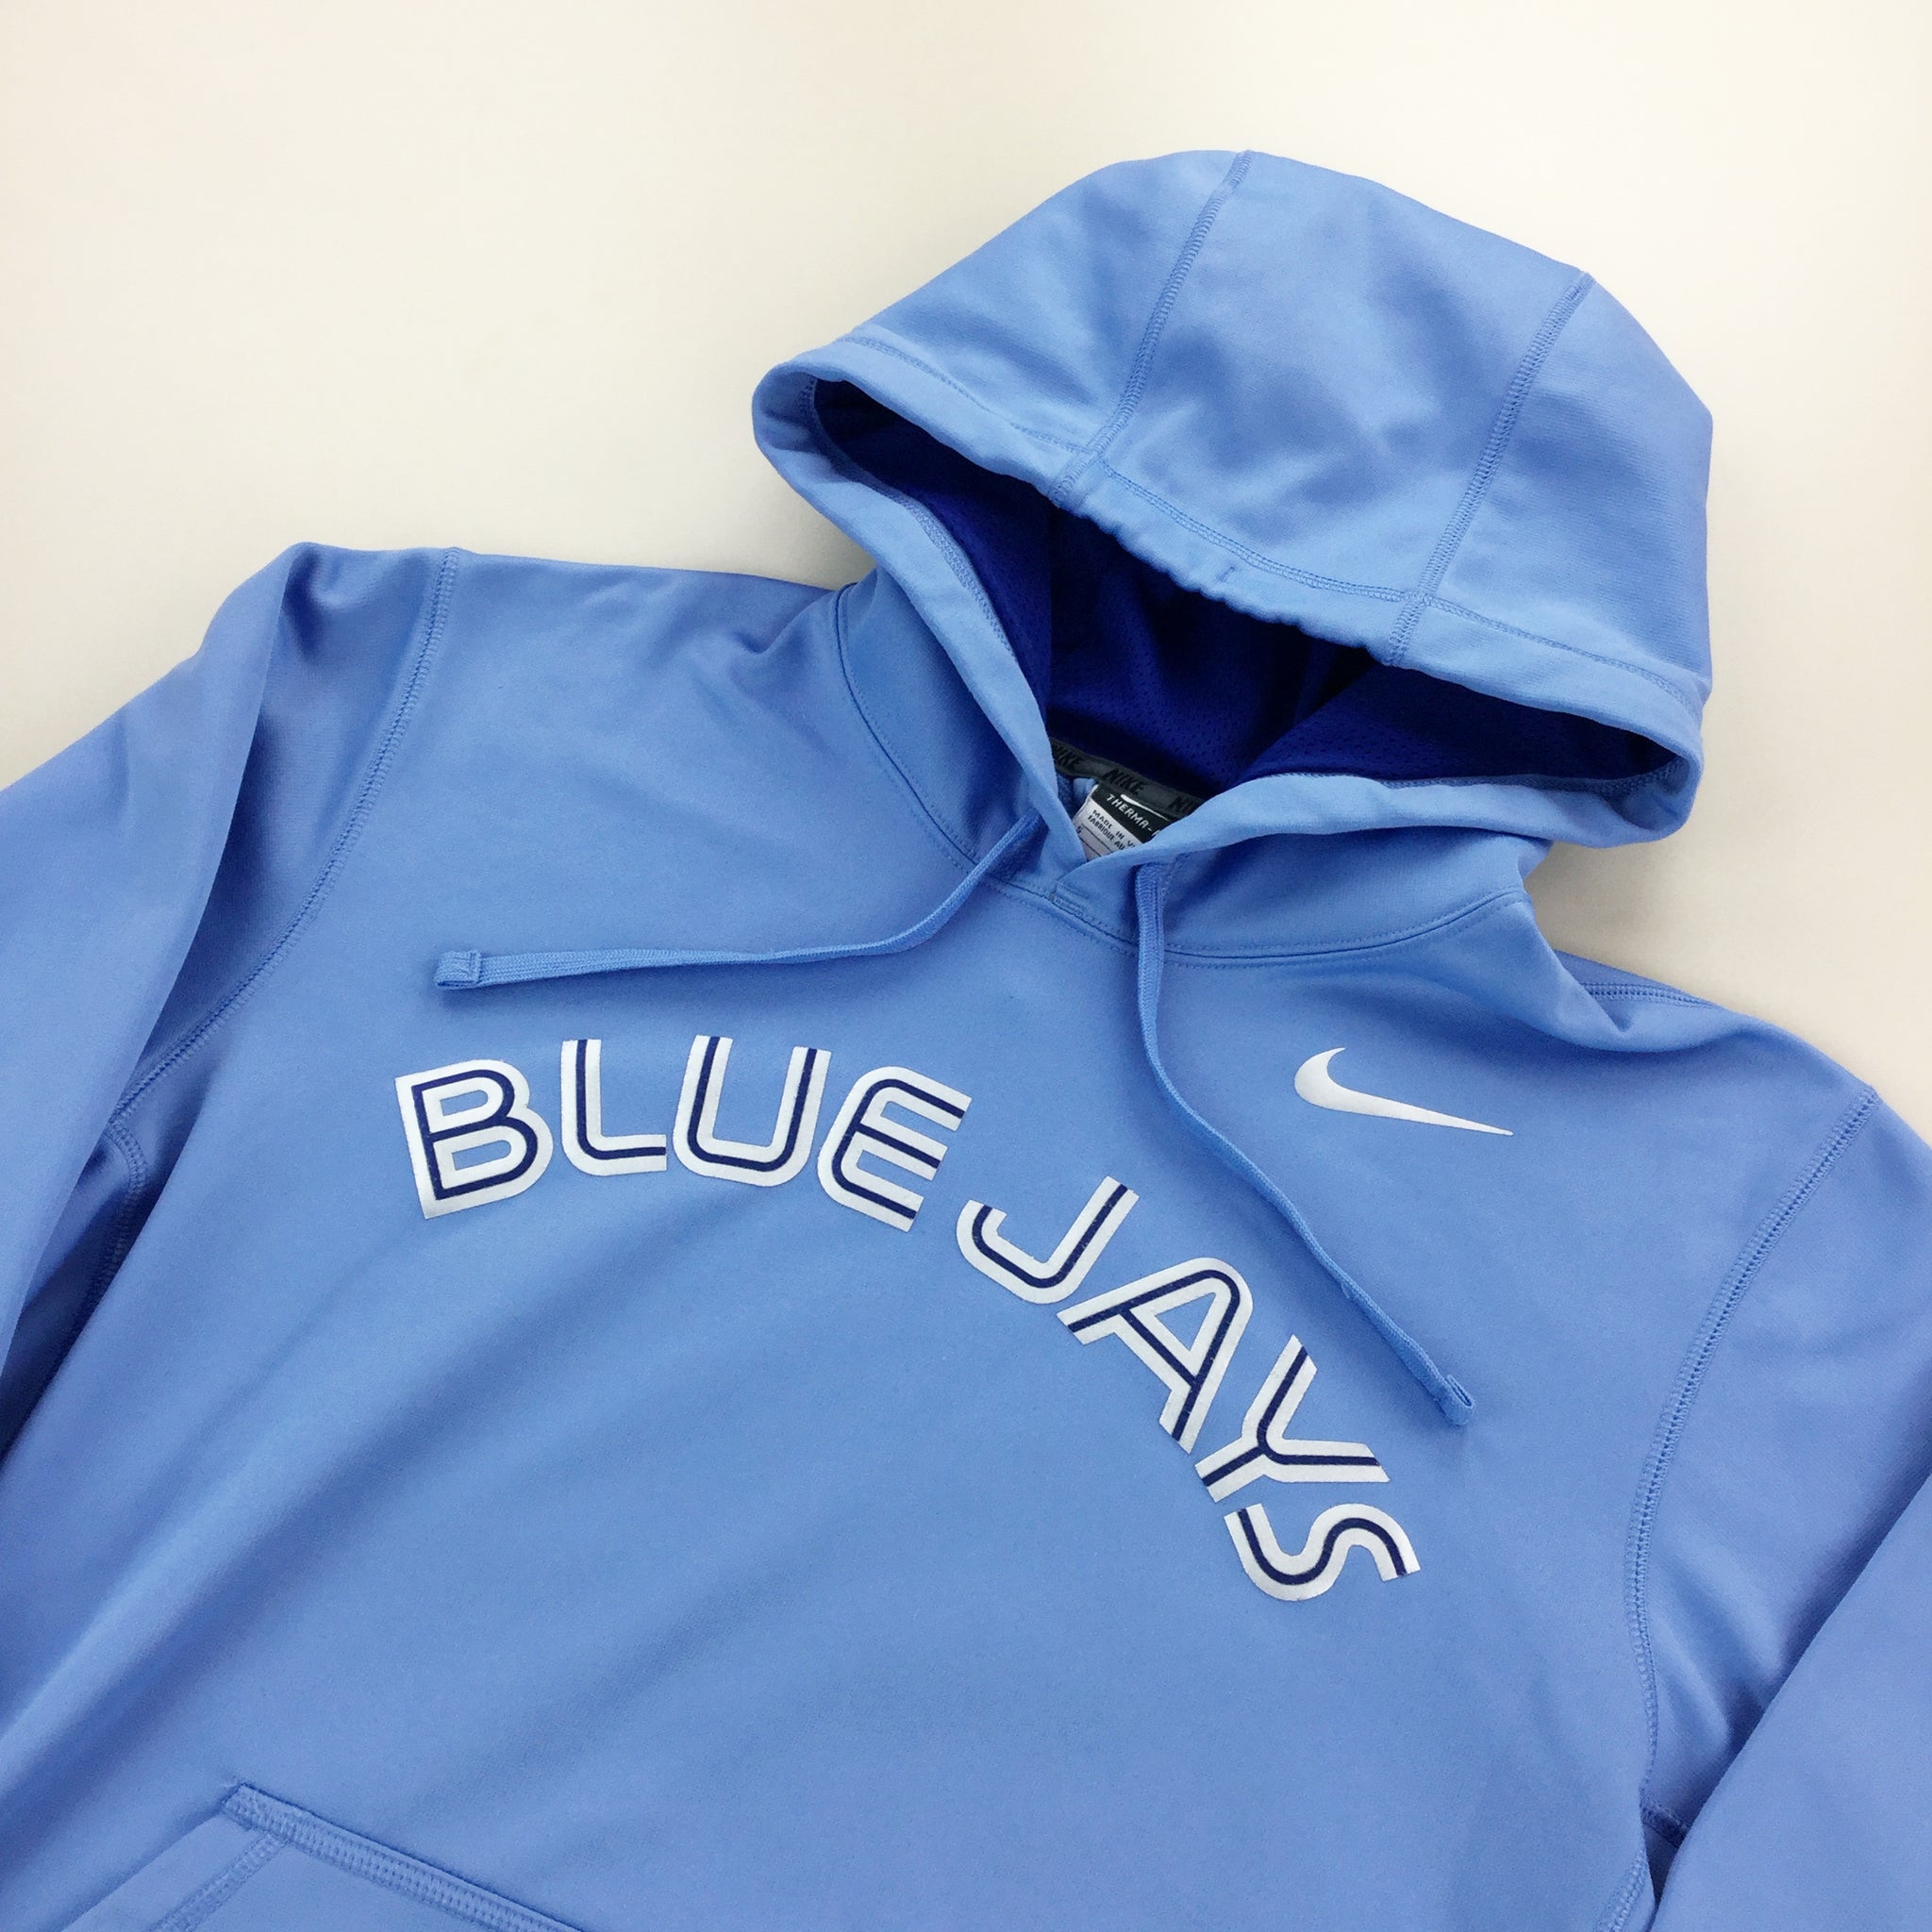 Nike Blue Jays Hoodie - Medium